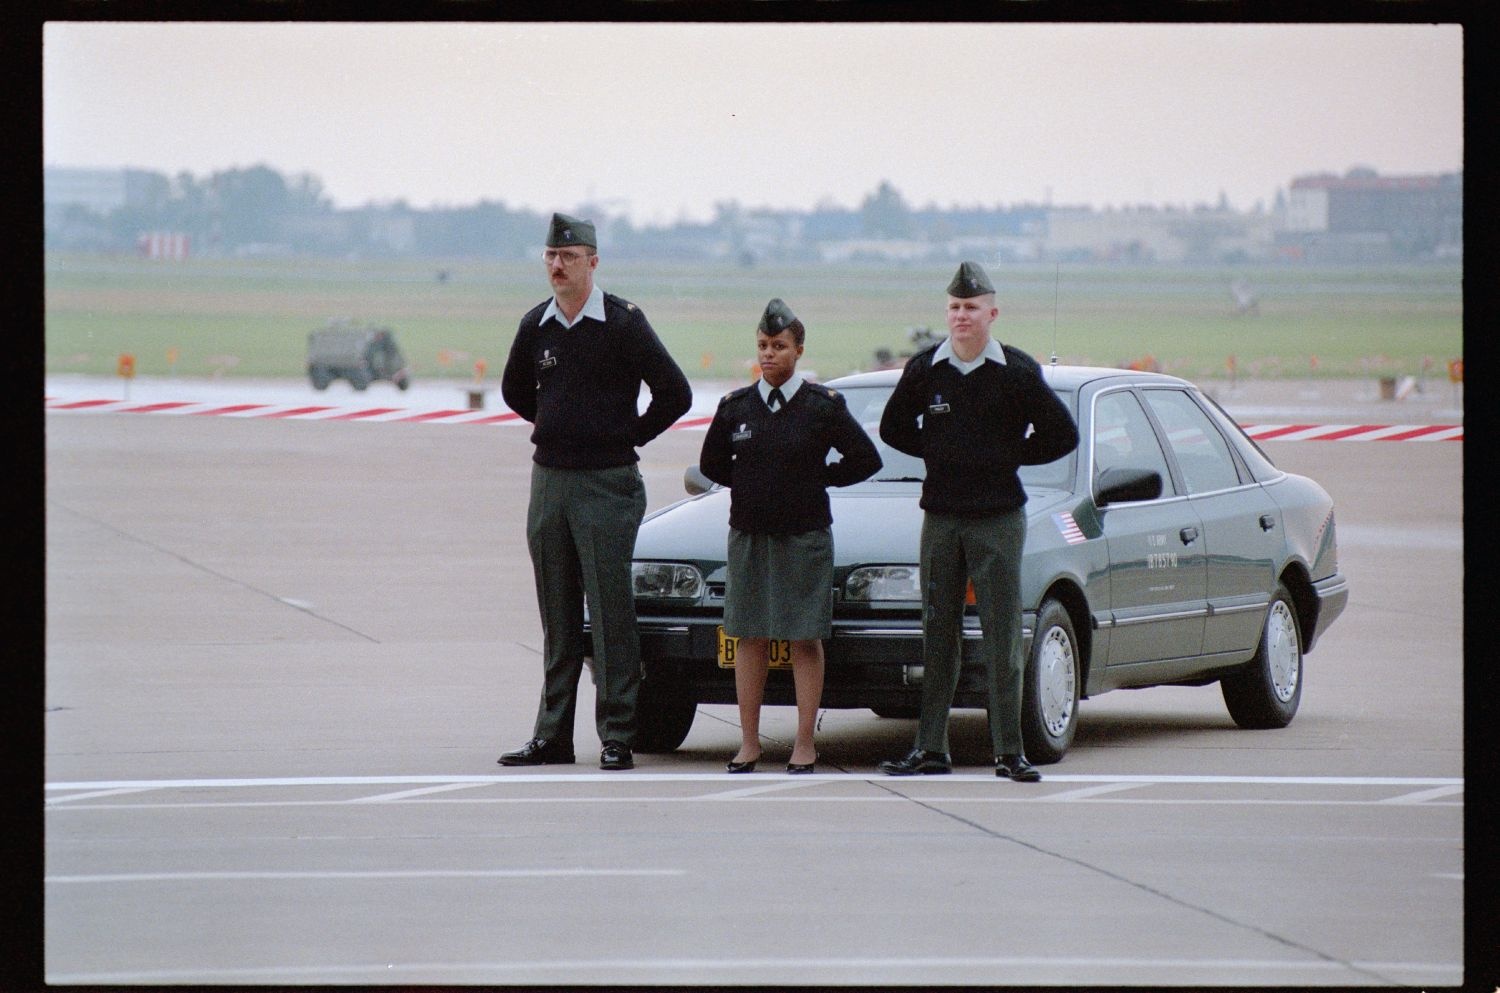 Fotografie: Militärische Zeremonie zur Einstellung der Operation Larkspur auf der Tempelhof Air Base in Berlin-Tempelhof